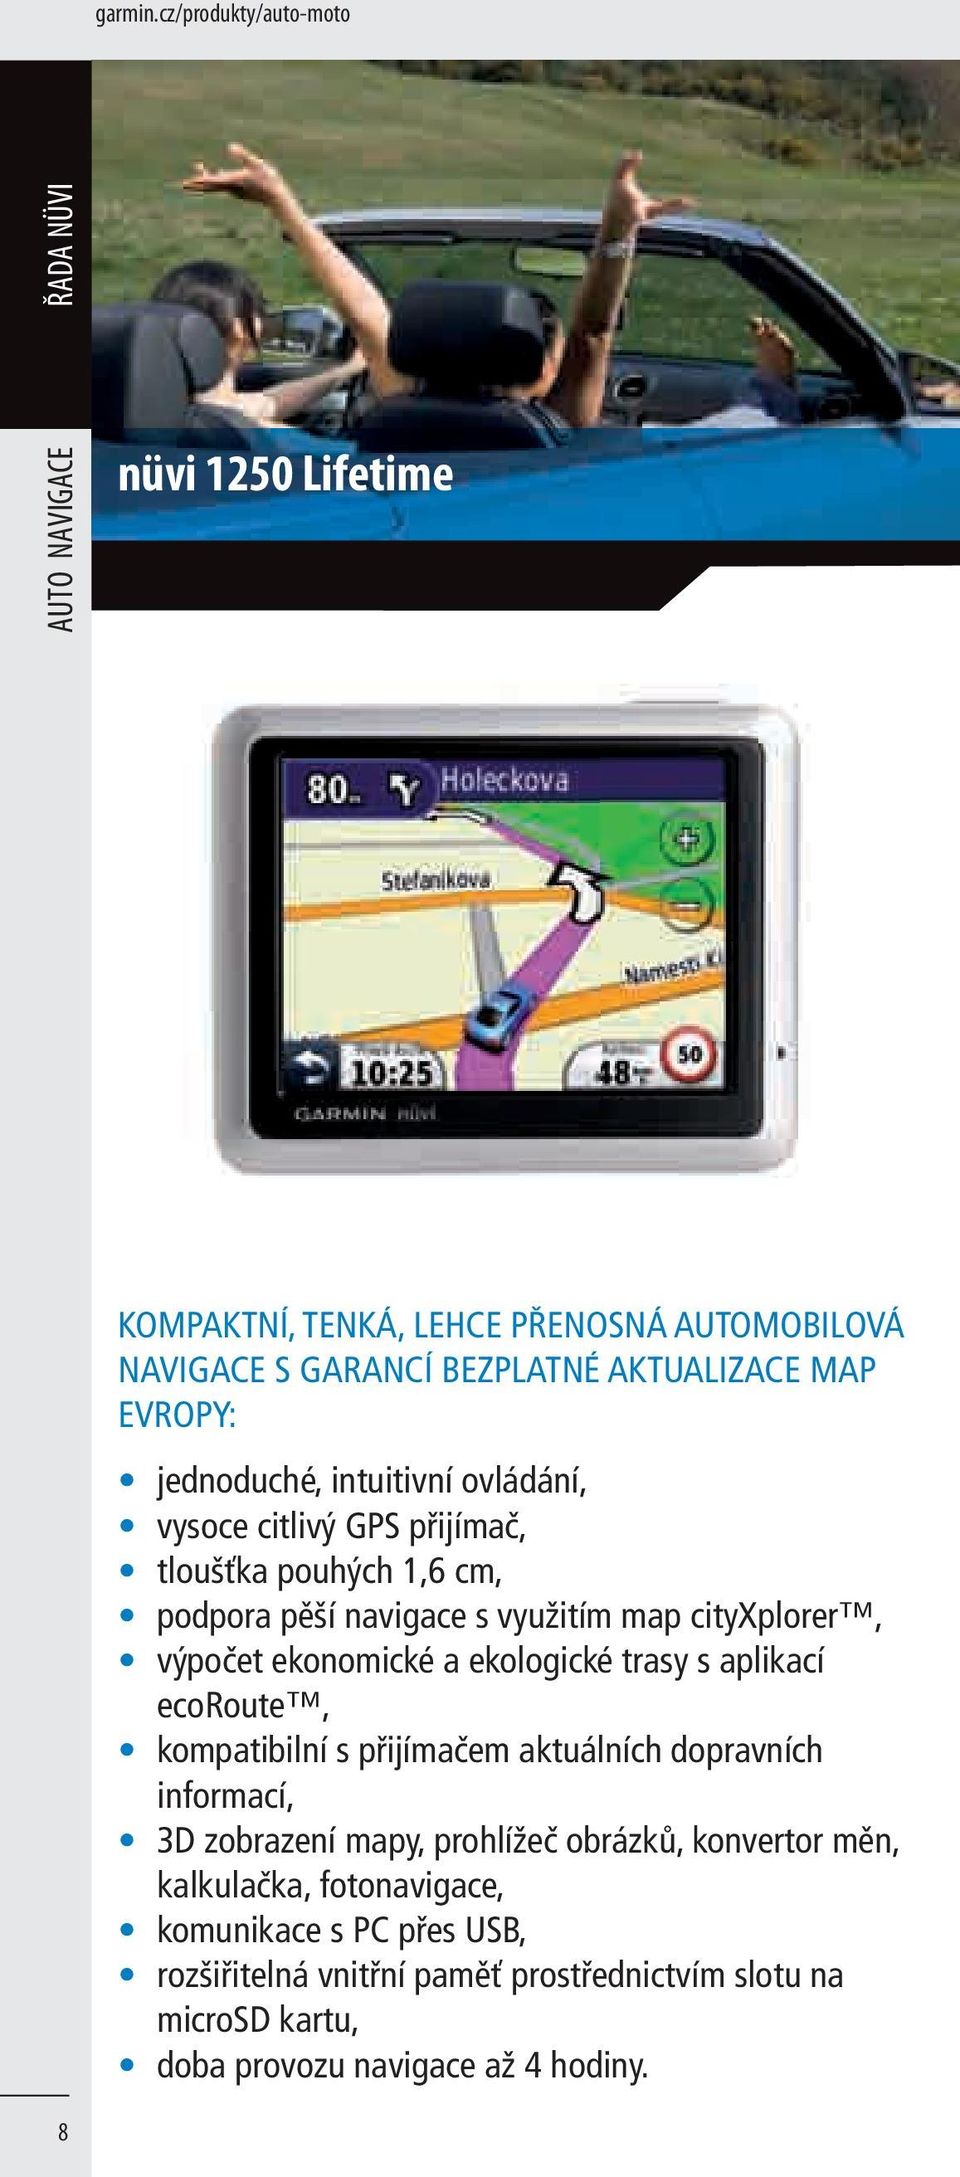 jednoduché, intuitivní ovládání, vysoce citlivý GPS přijímač, tloušťka pouhých 1,6 cm, podpora pěší navigace s využitím map cityxplorer, výpočet ekonomické a